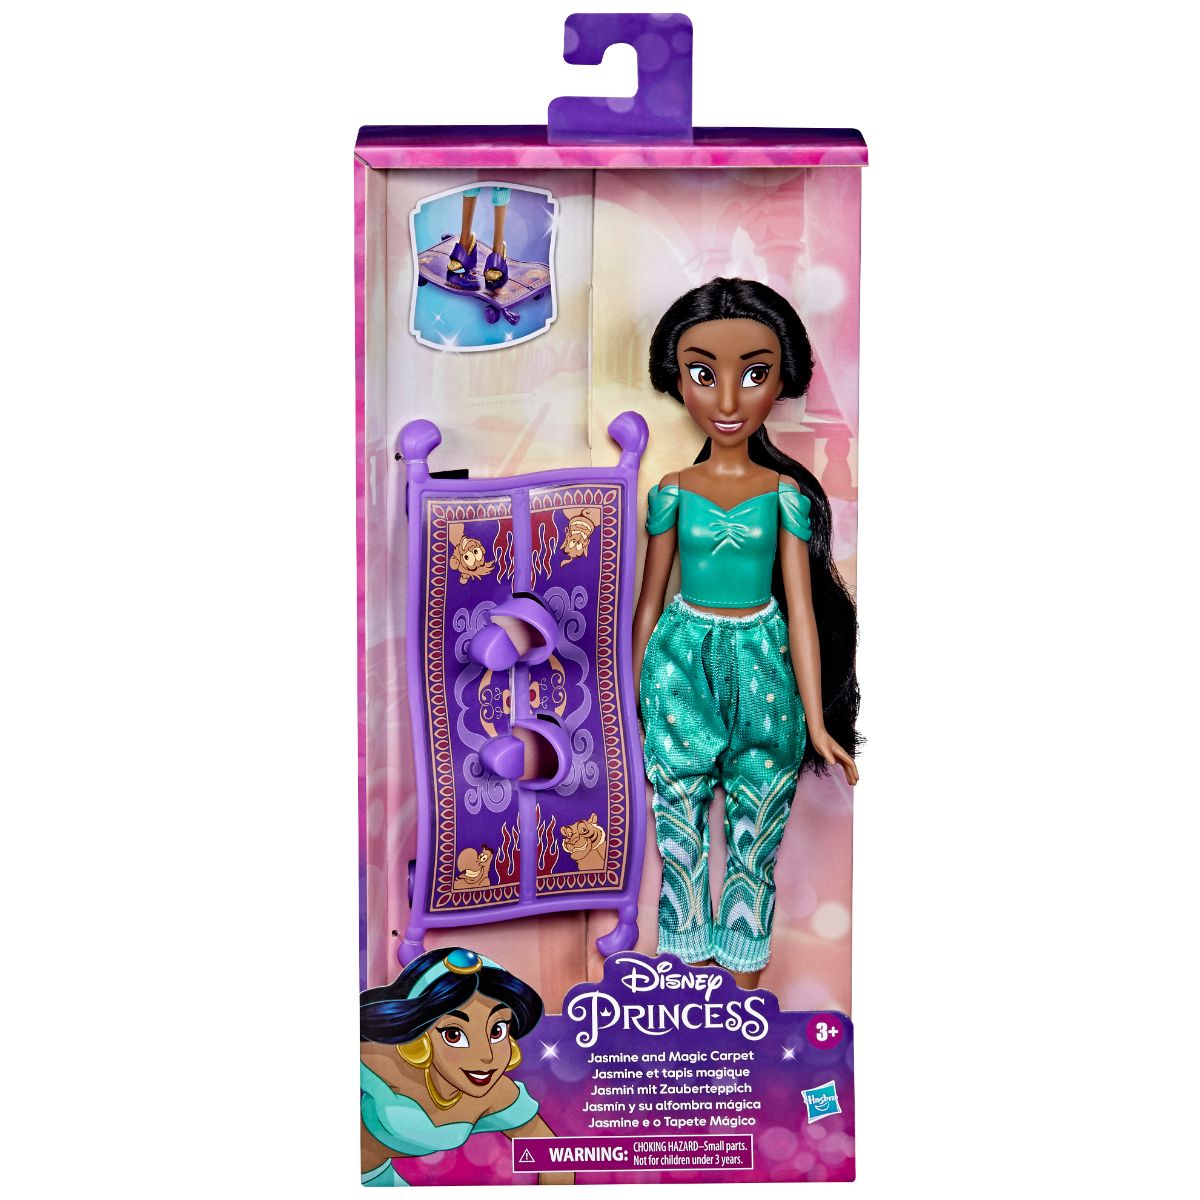 Papusa Everyday Adventures Disney Princess, Jasmine and magic carpet, F3388EU40